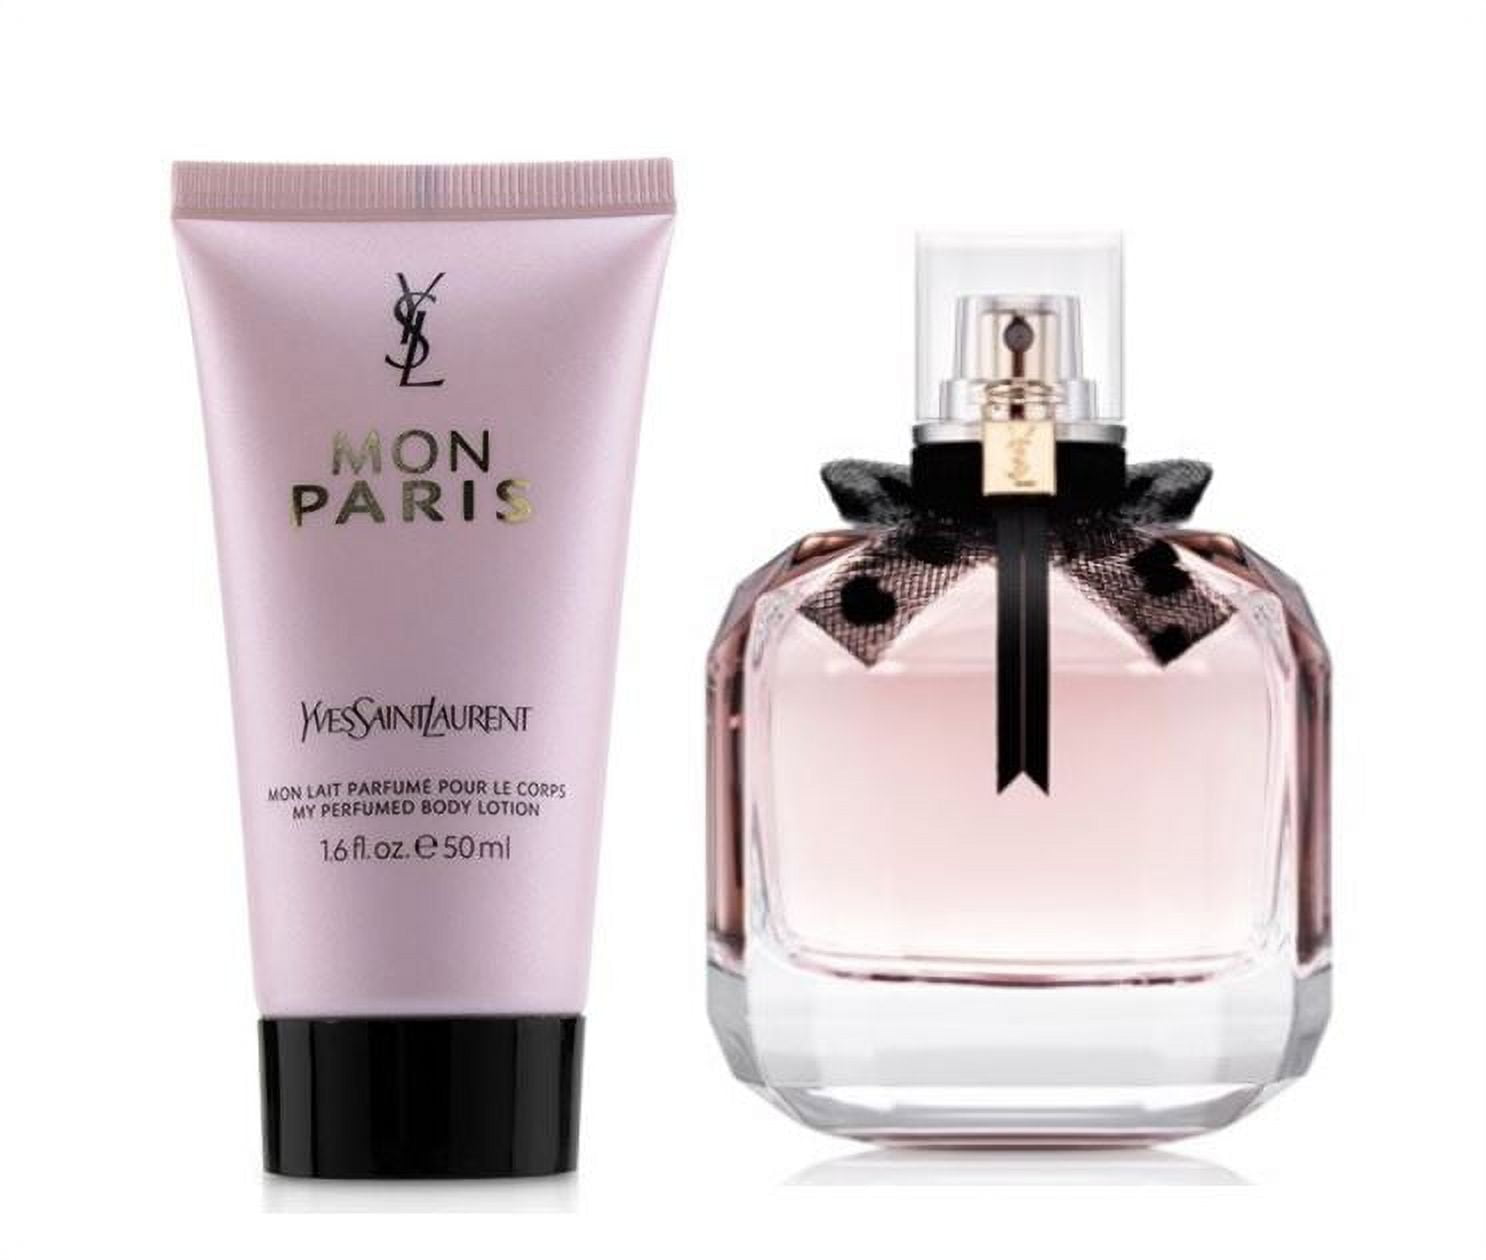 Mon Paris Eau de Parfum Perfume Set - Yves Saint Laurent